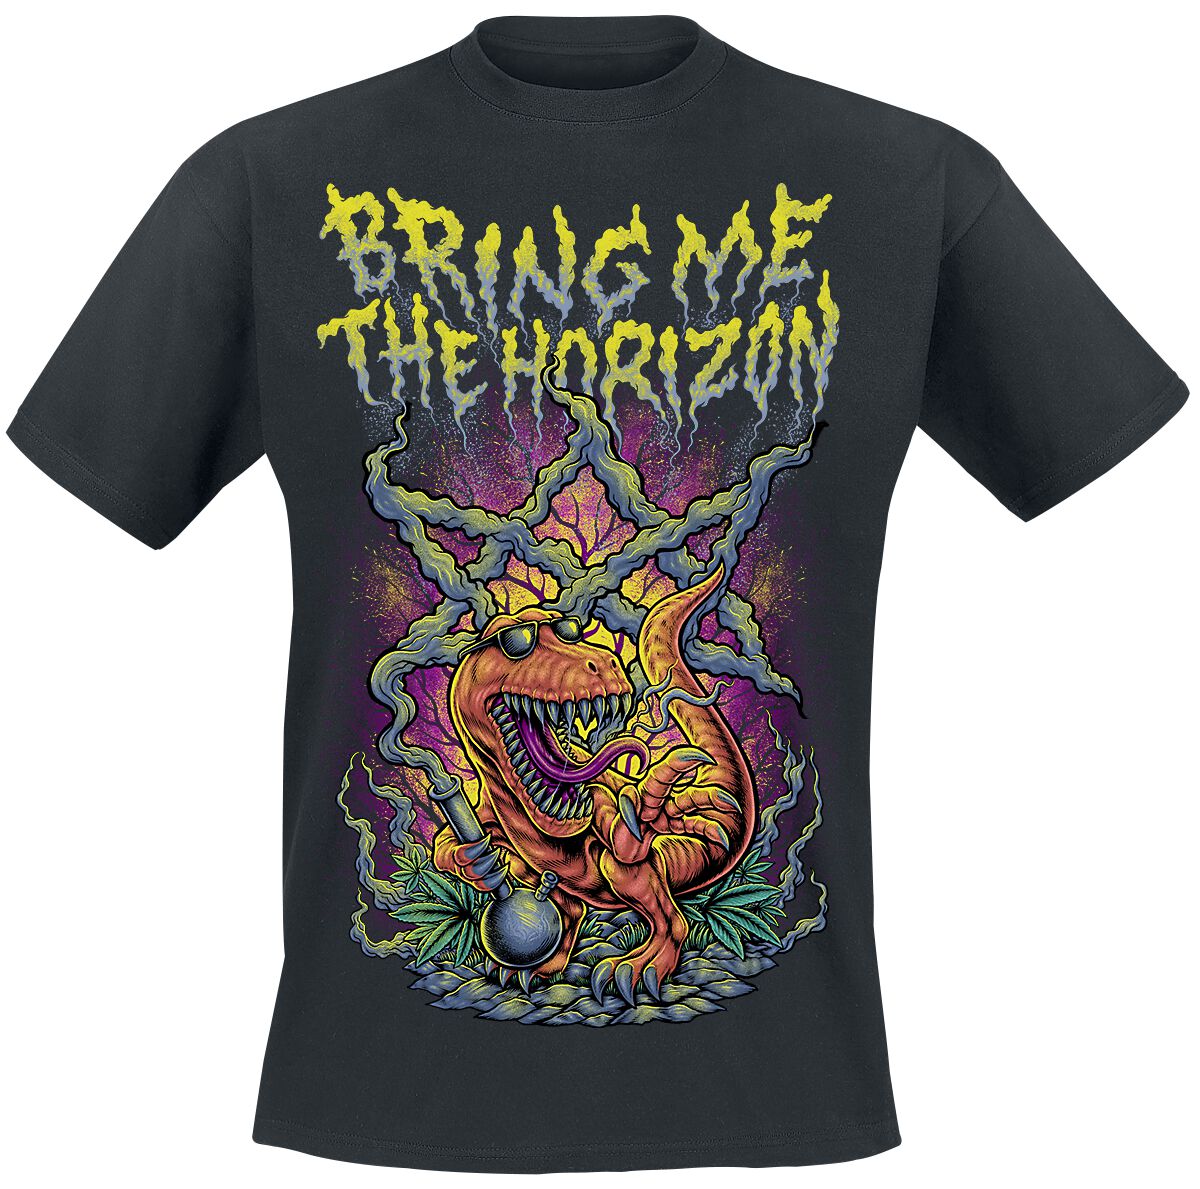 Bring Me The Horizon T-Shirt - Smoking Dinosaur - S bis XXL - für Männer - Größe L - schwarz  - Lizenziertes Merchandise!